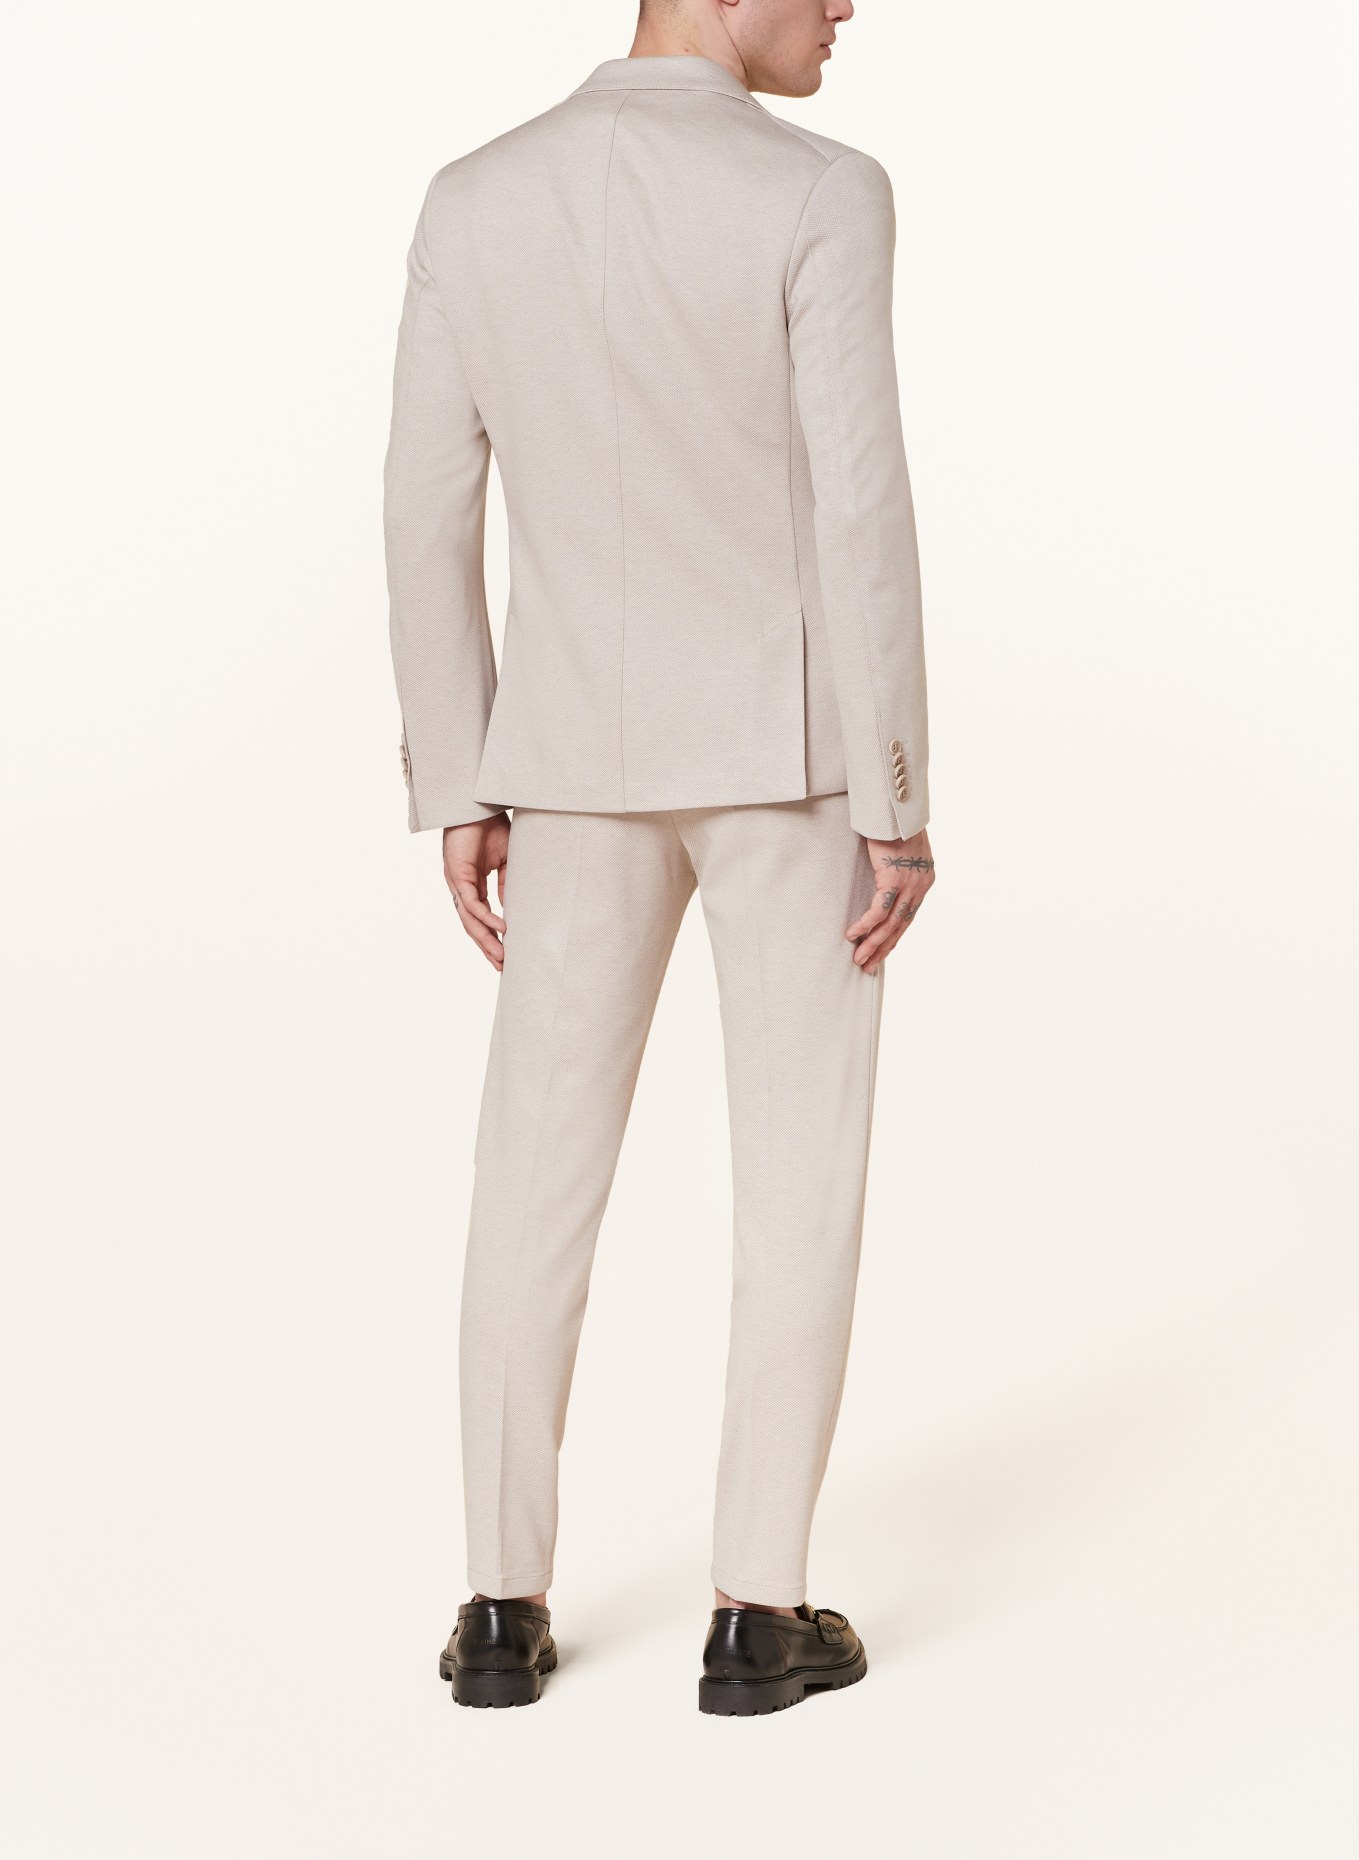 DRYKORN Suit jacket CARLES slim fit, Color: 1705 braun (Image 3)